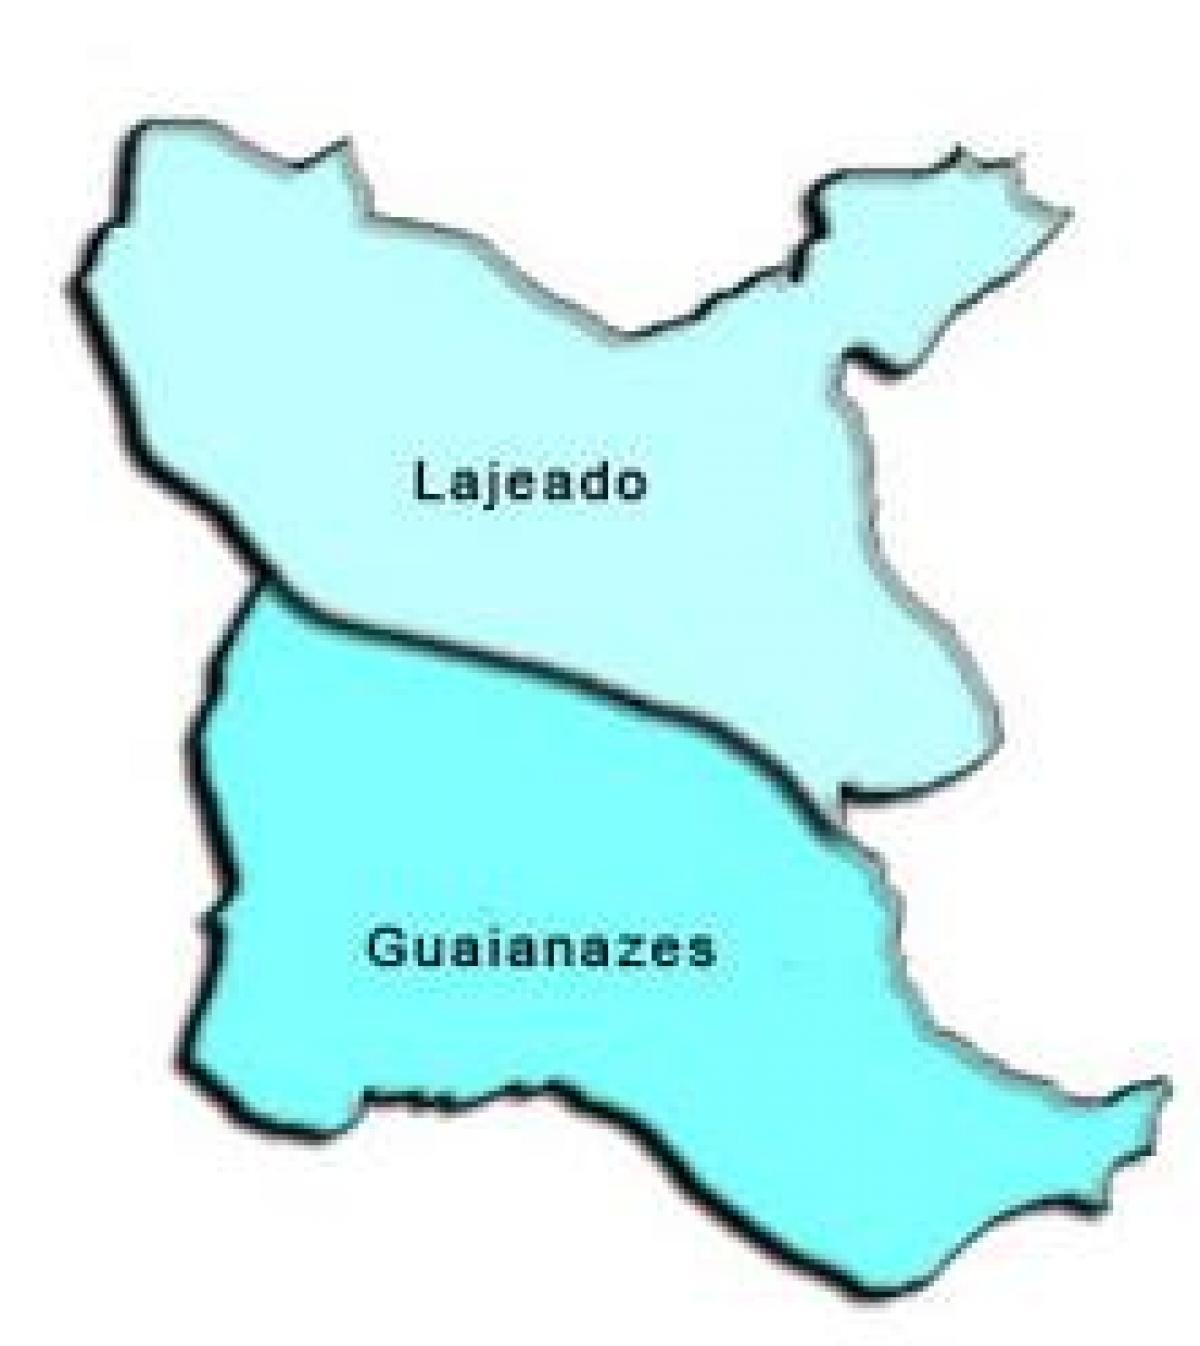 Քարտեզ Guaianases супрефектур